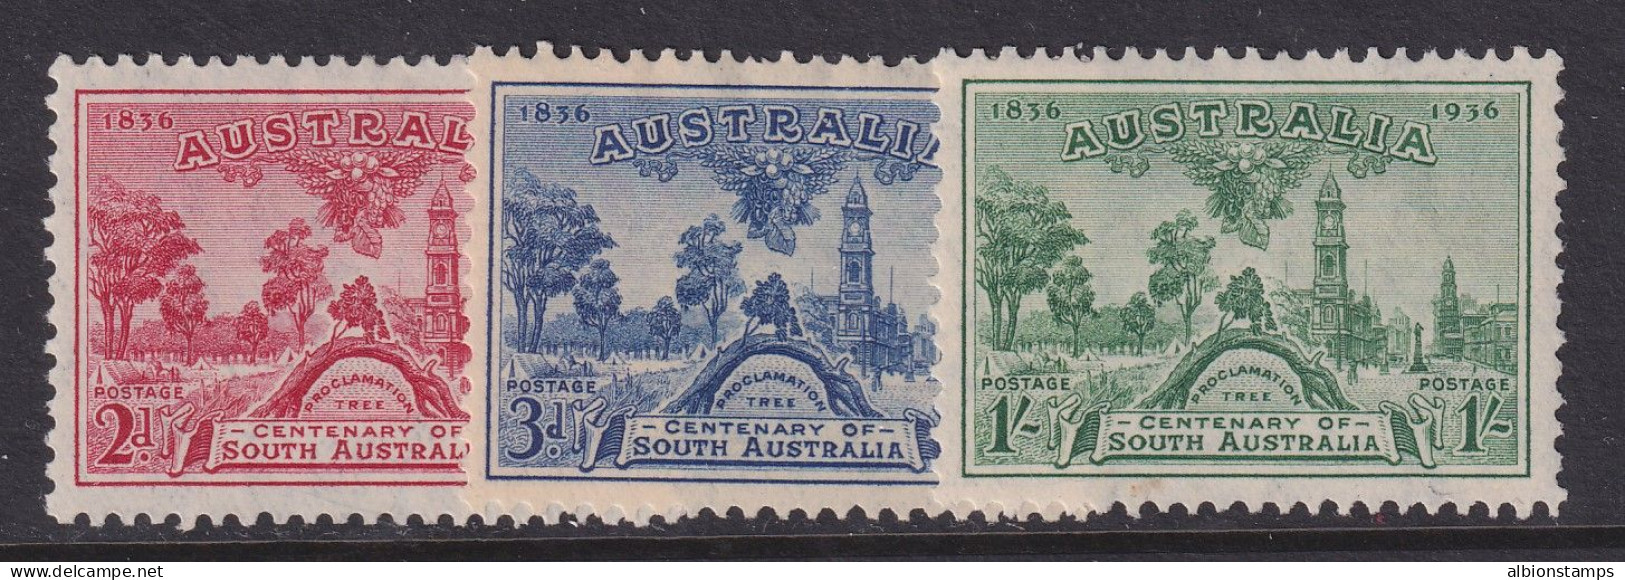 Australia, Scott 159-161 (SG 161-163), MLH - Mint Stamps